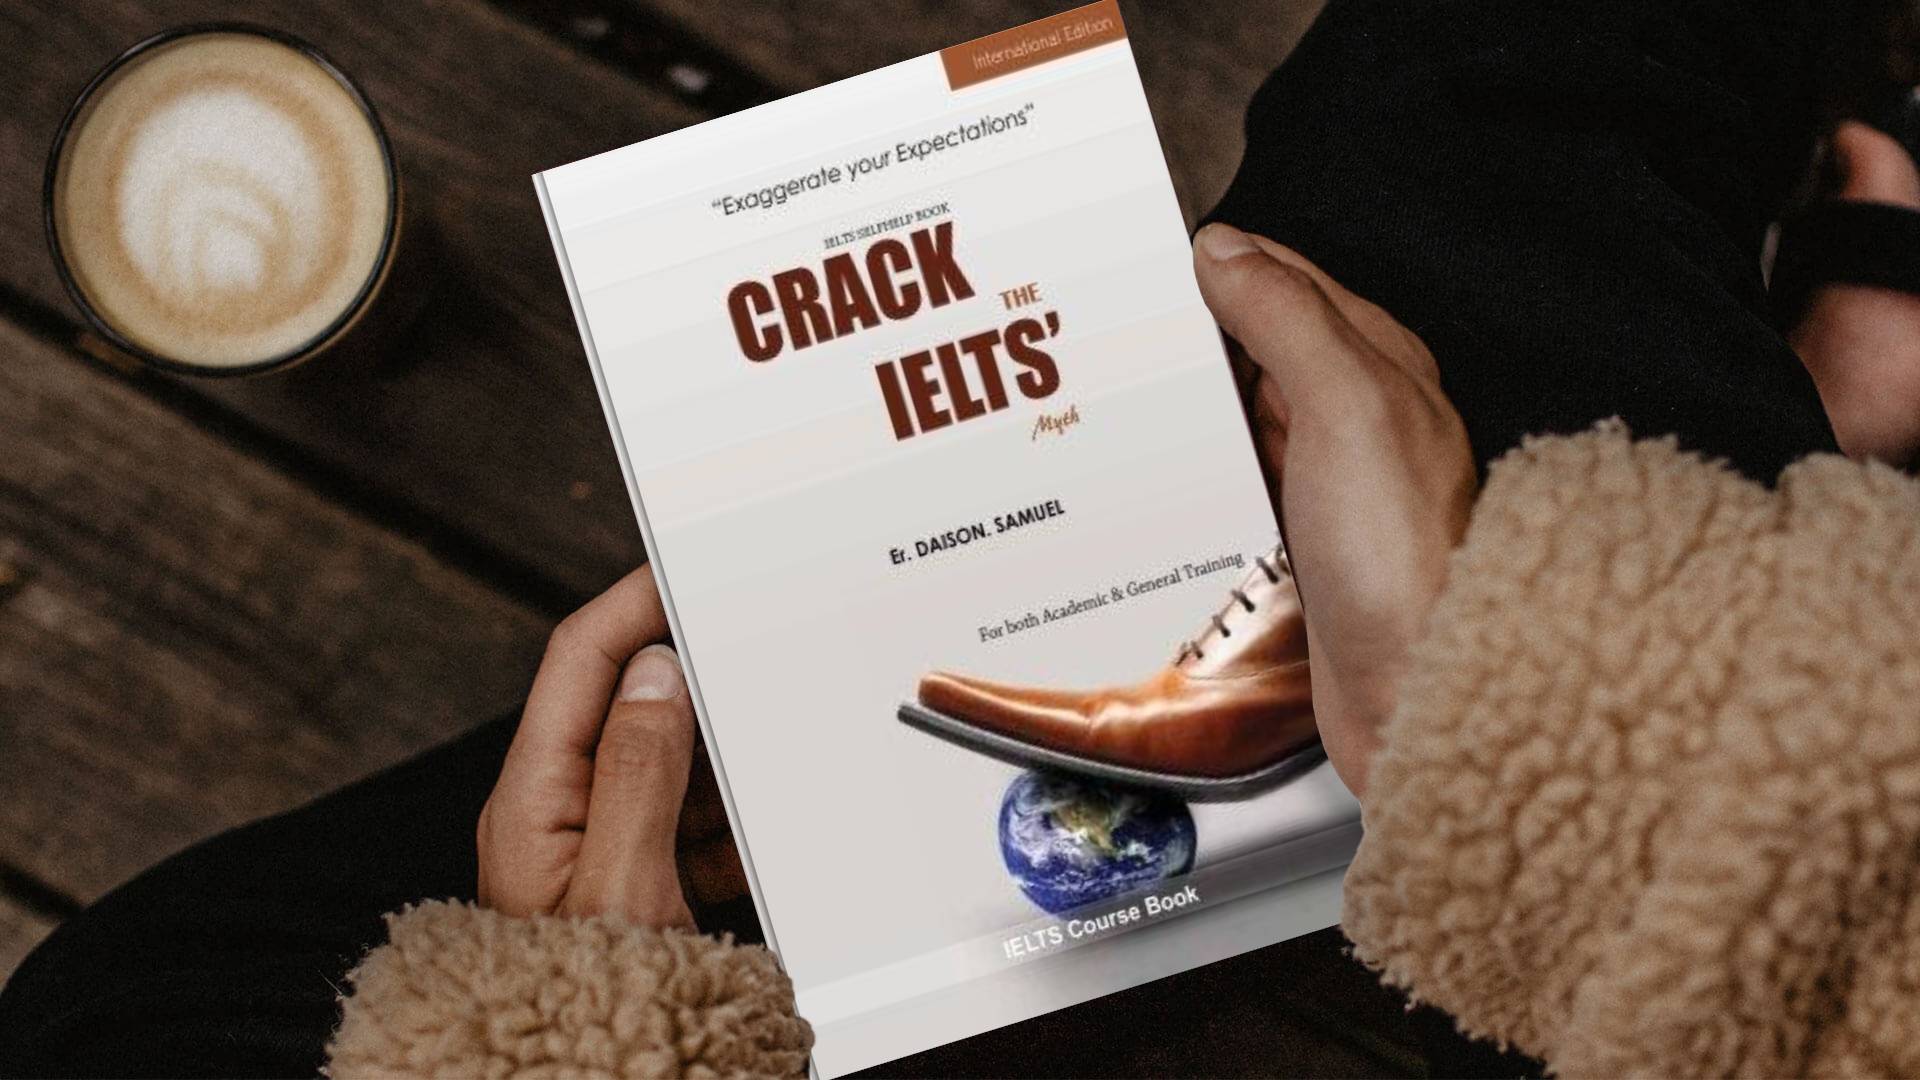 خرید کتاب زبان | فروشگاه اینترنتی کتاب زبان | Crack The IELTS' Myth | کرک د آیلتس میث